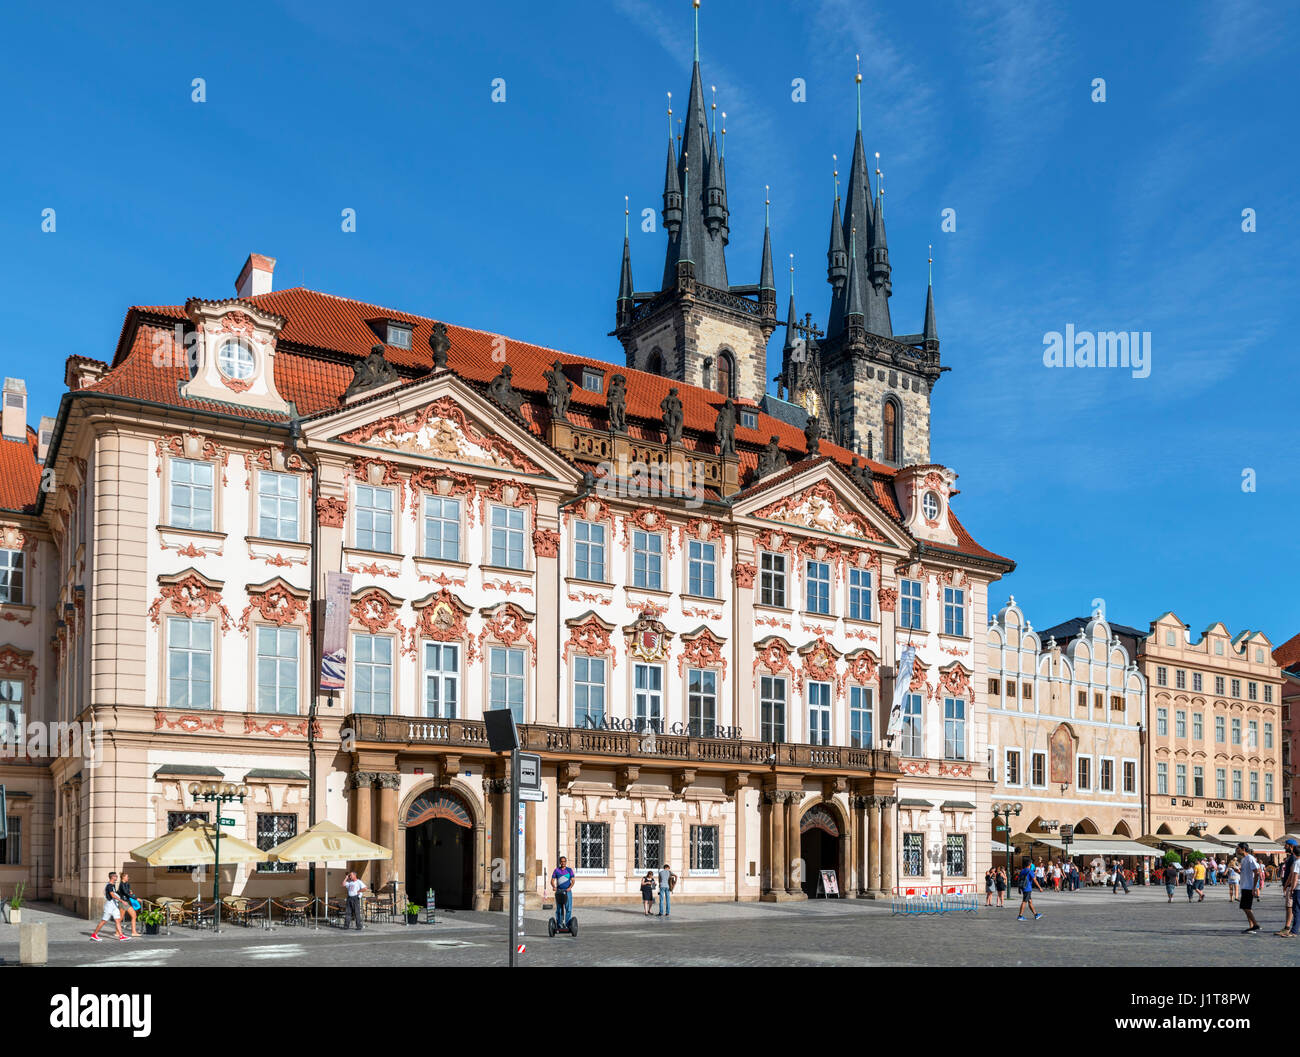 Kinsky Palace, part of the National Gallery, Old Town Square (Staroměstské náměstí), Staré Město, Prague, Czech Republic Stock Photo